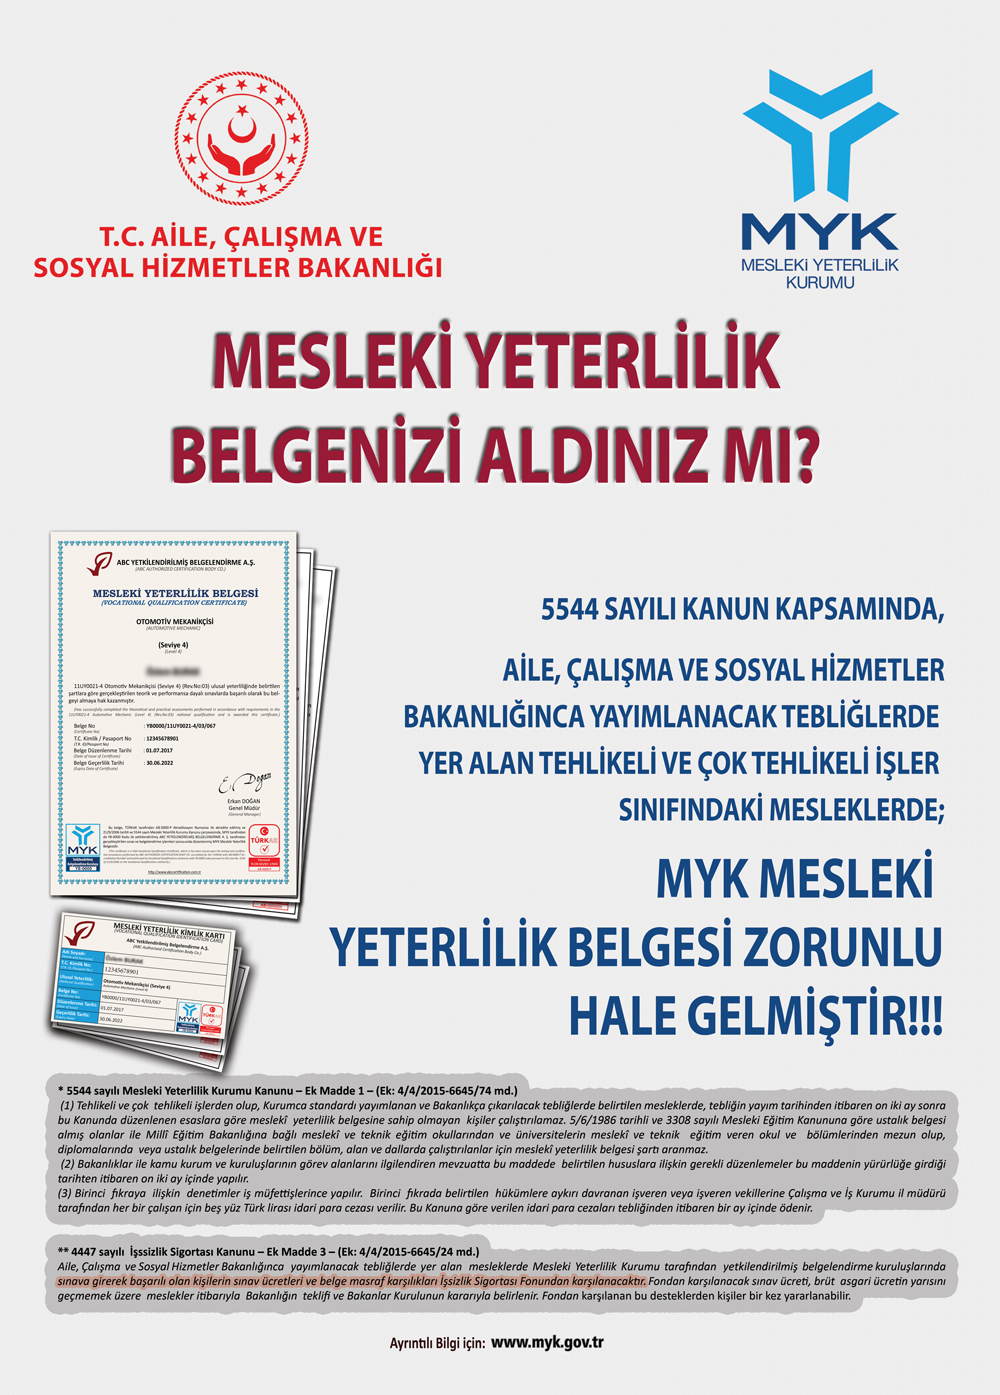 Myk İstanbul Mesleki Yeterlilik Belgesi 05422927619